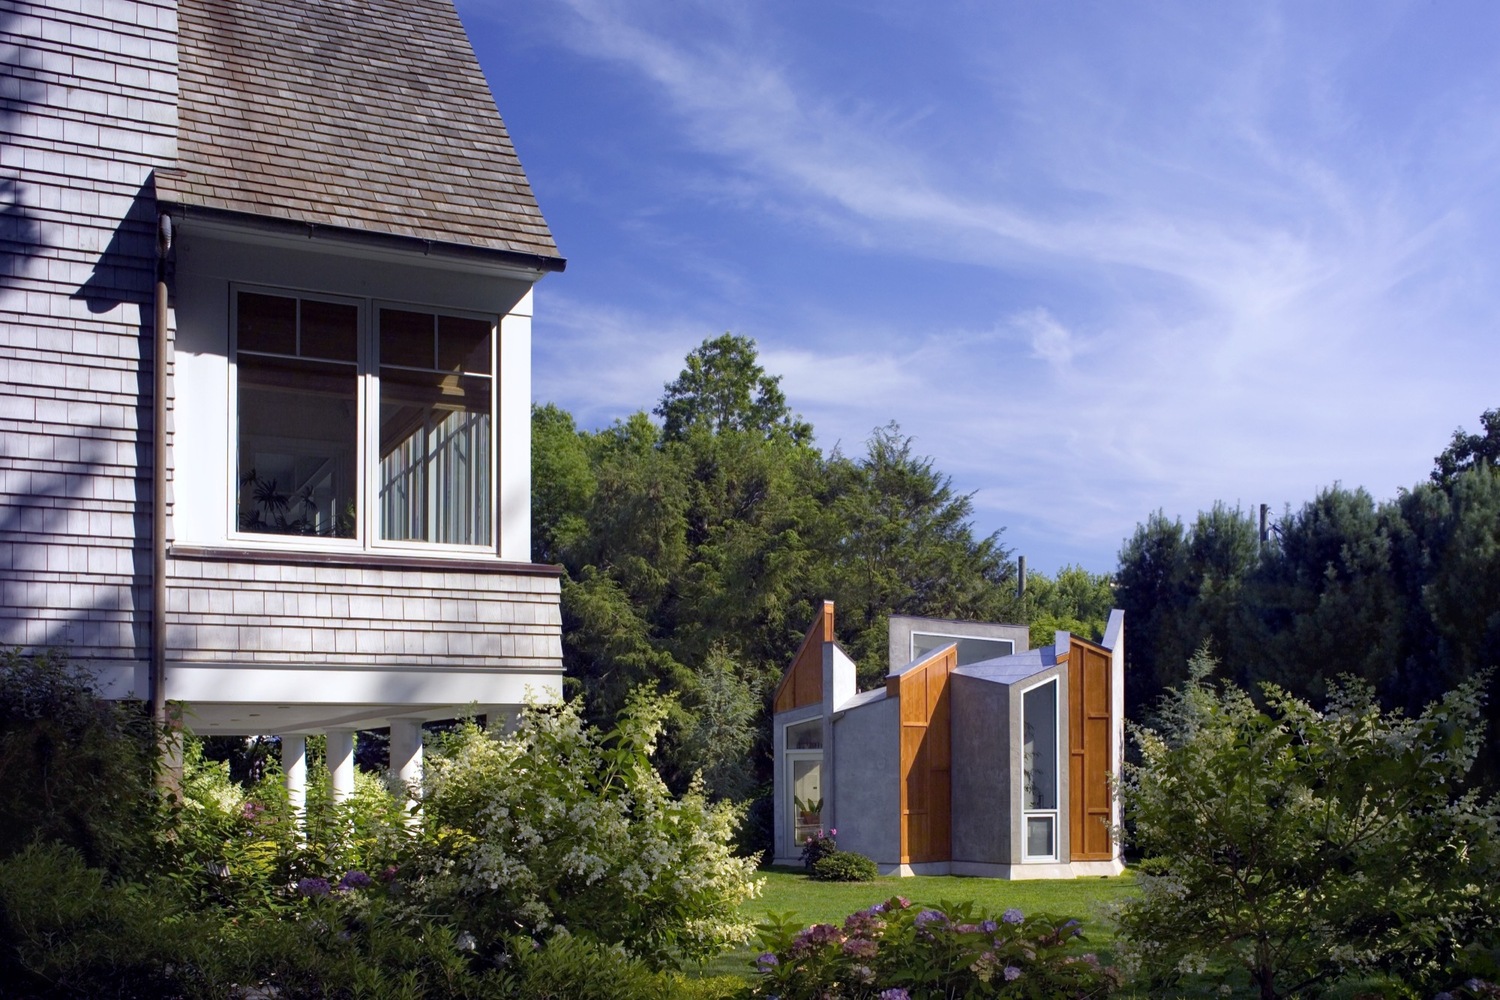 Nằm trong khu vườn phía sau của một ngôi nhà gia đình, studio kiến ​​trúc vừa là nơi làm việc vừa ví như “một nơi ẩn náu yên bình”.